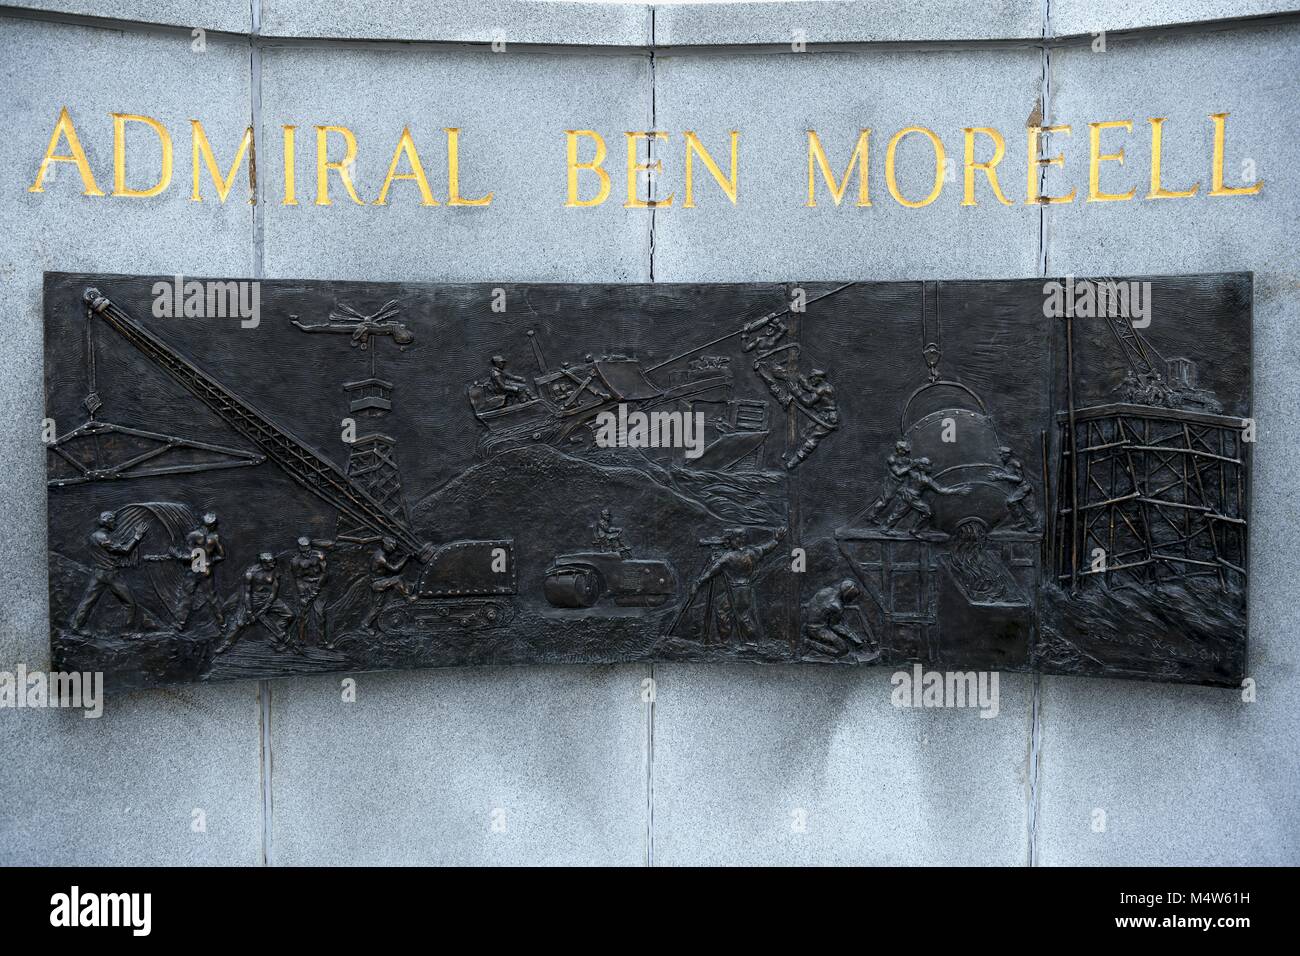 Admiral Ben Moreell "il padre di Seabees' statua presso l'Accademia Navale degli Stati Uniti, Annapolis, MD, Stati Uniti d'America Foto Stock